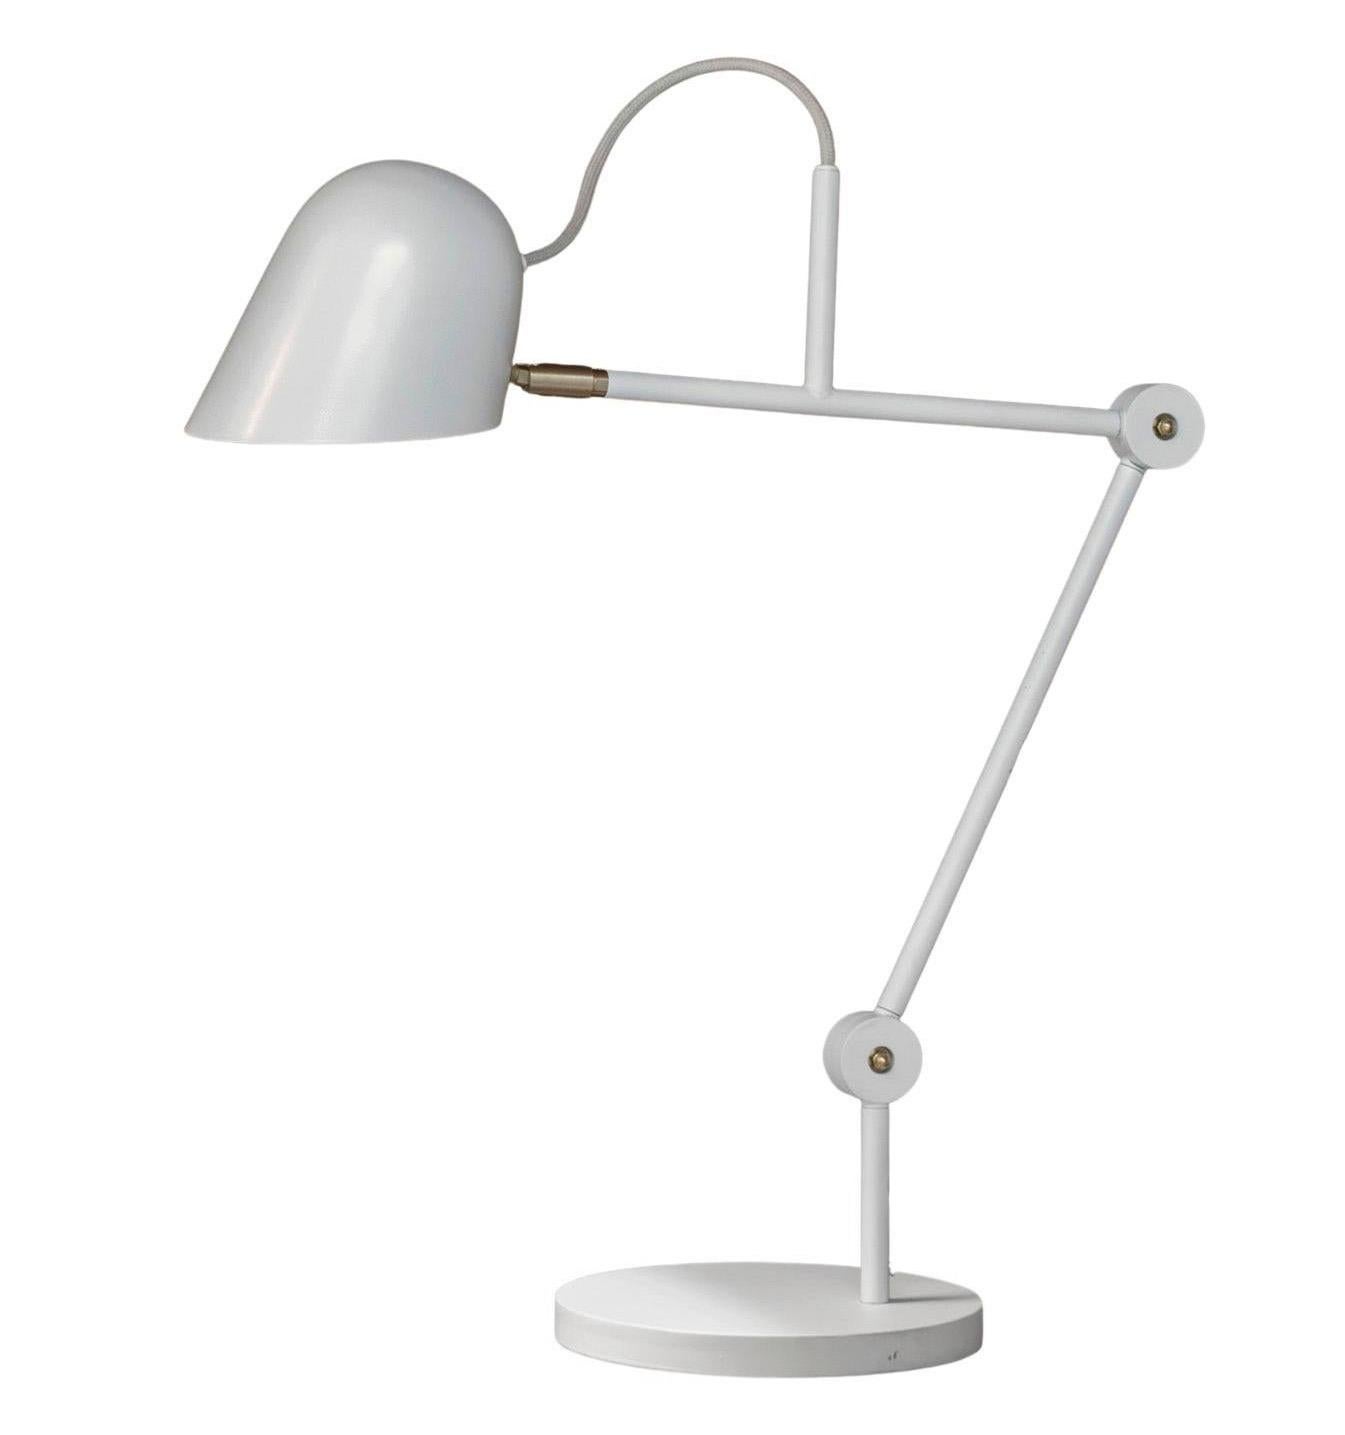 'Streck' Adjustable Table Lamp by Joel Karlsson for Örsjö in Black For Sale 6